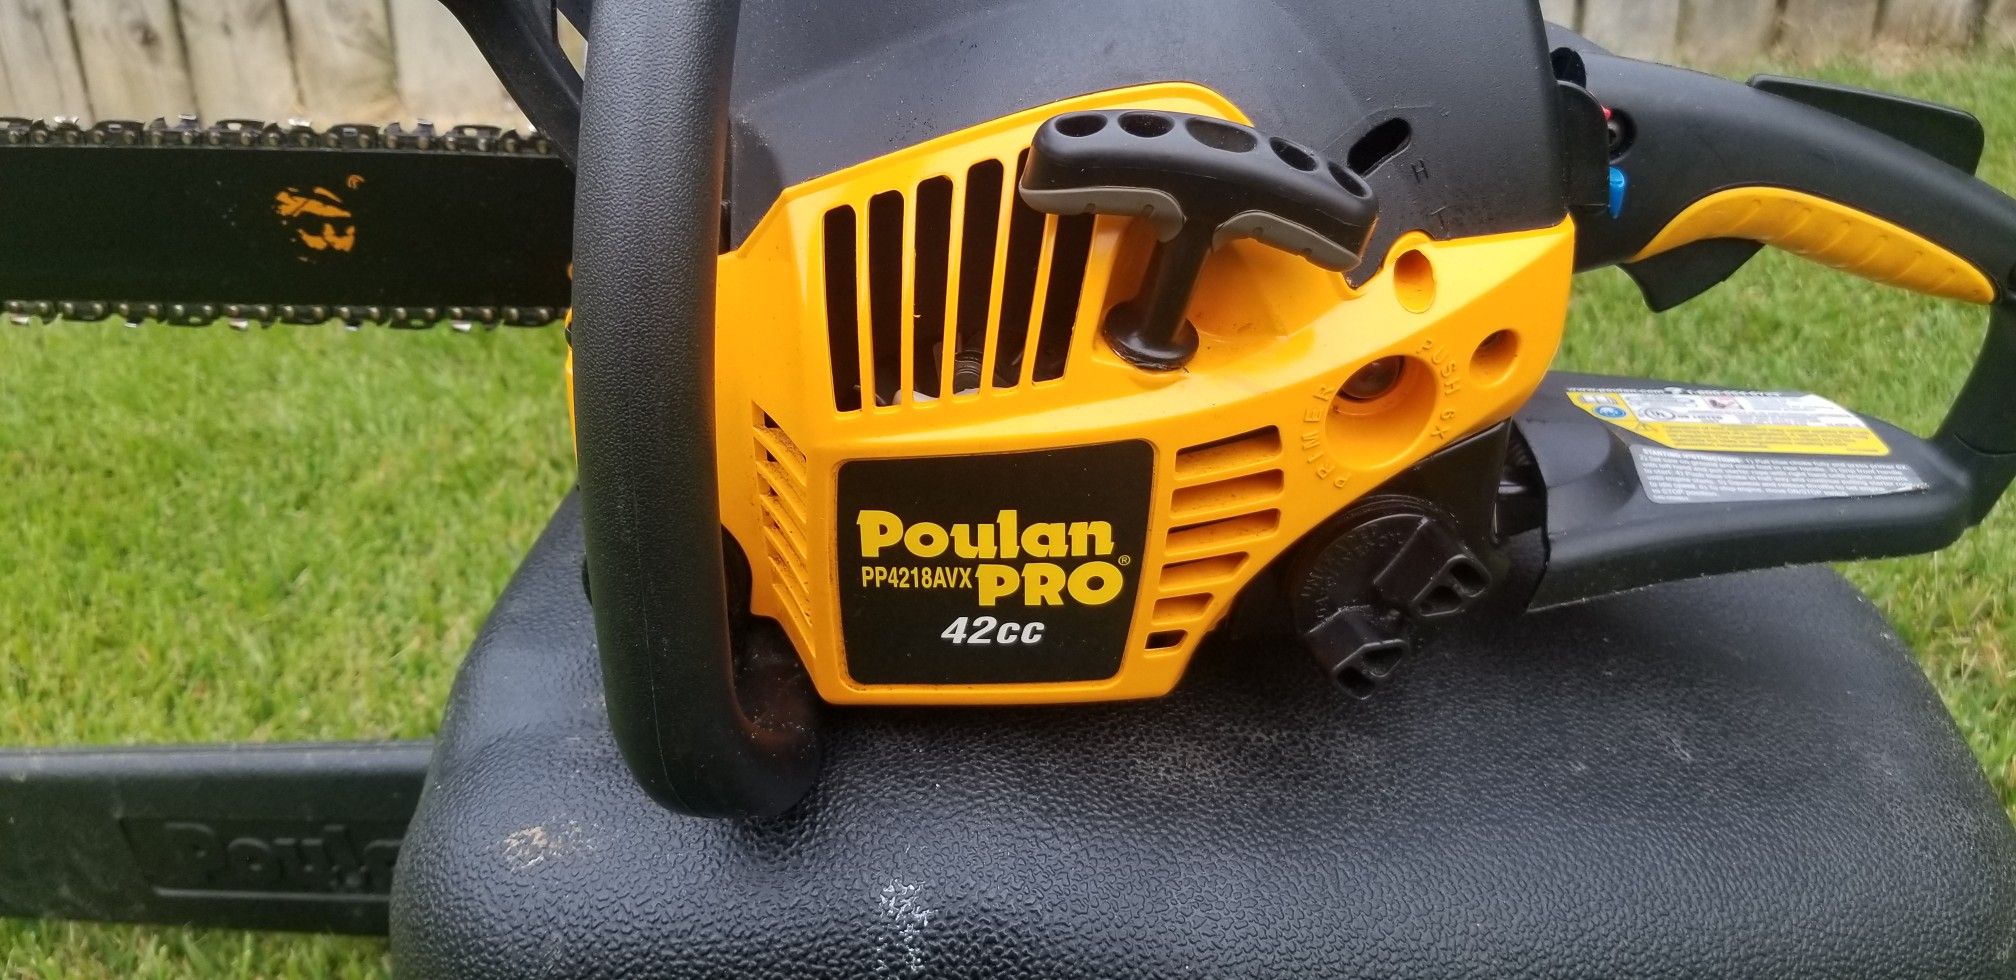 Poulan pro chainsaw